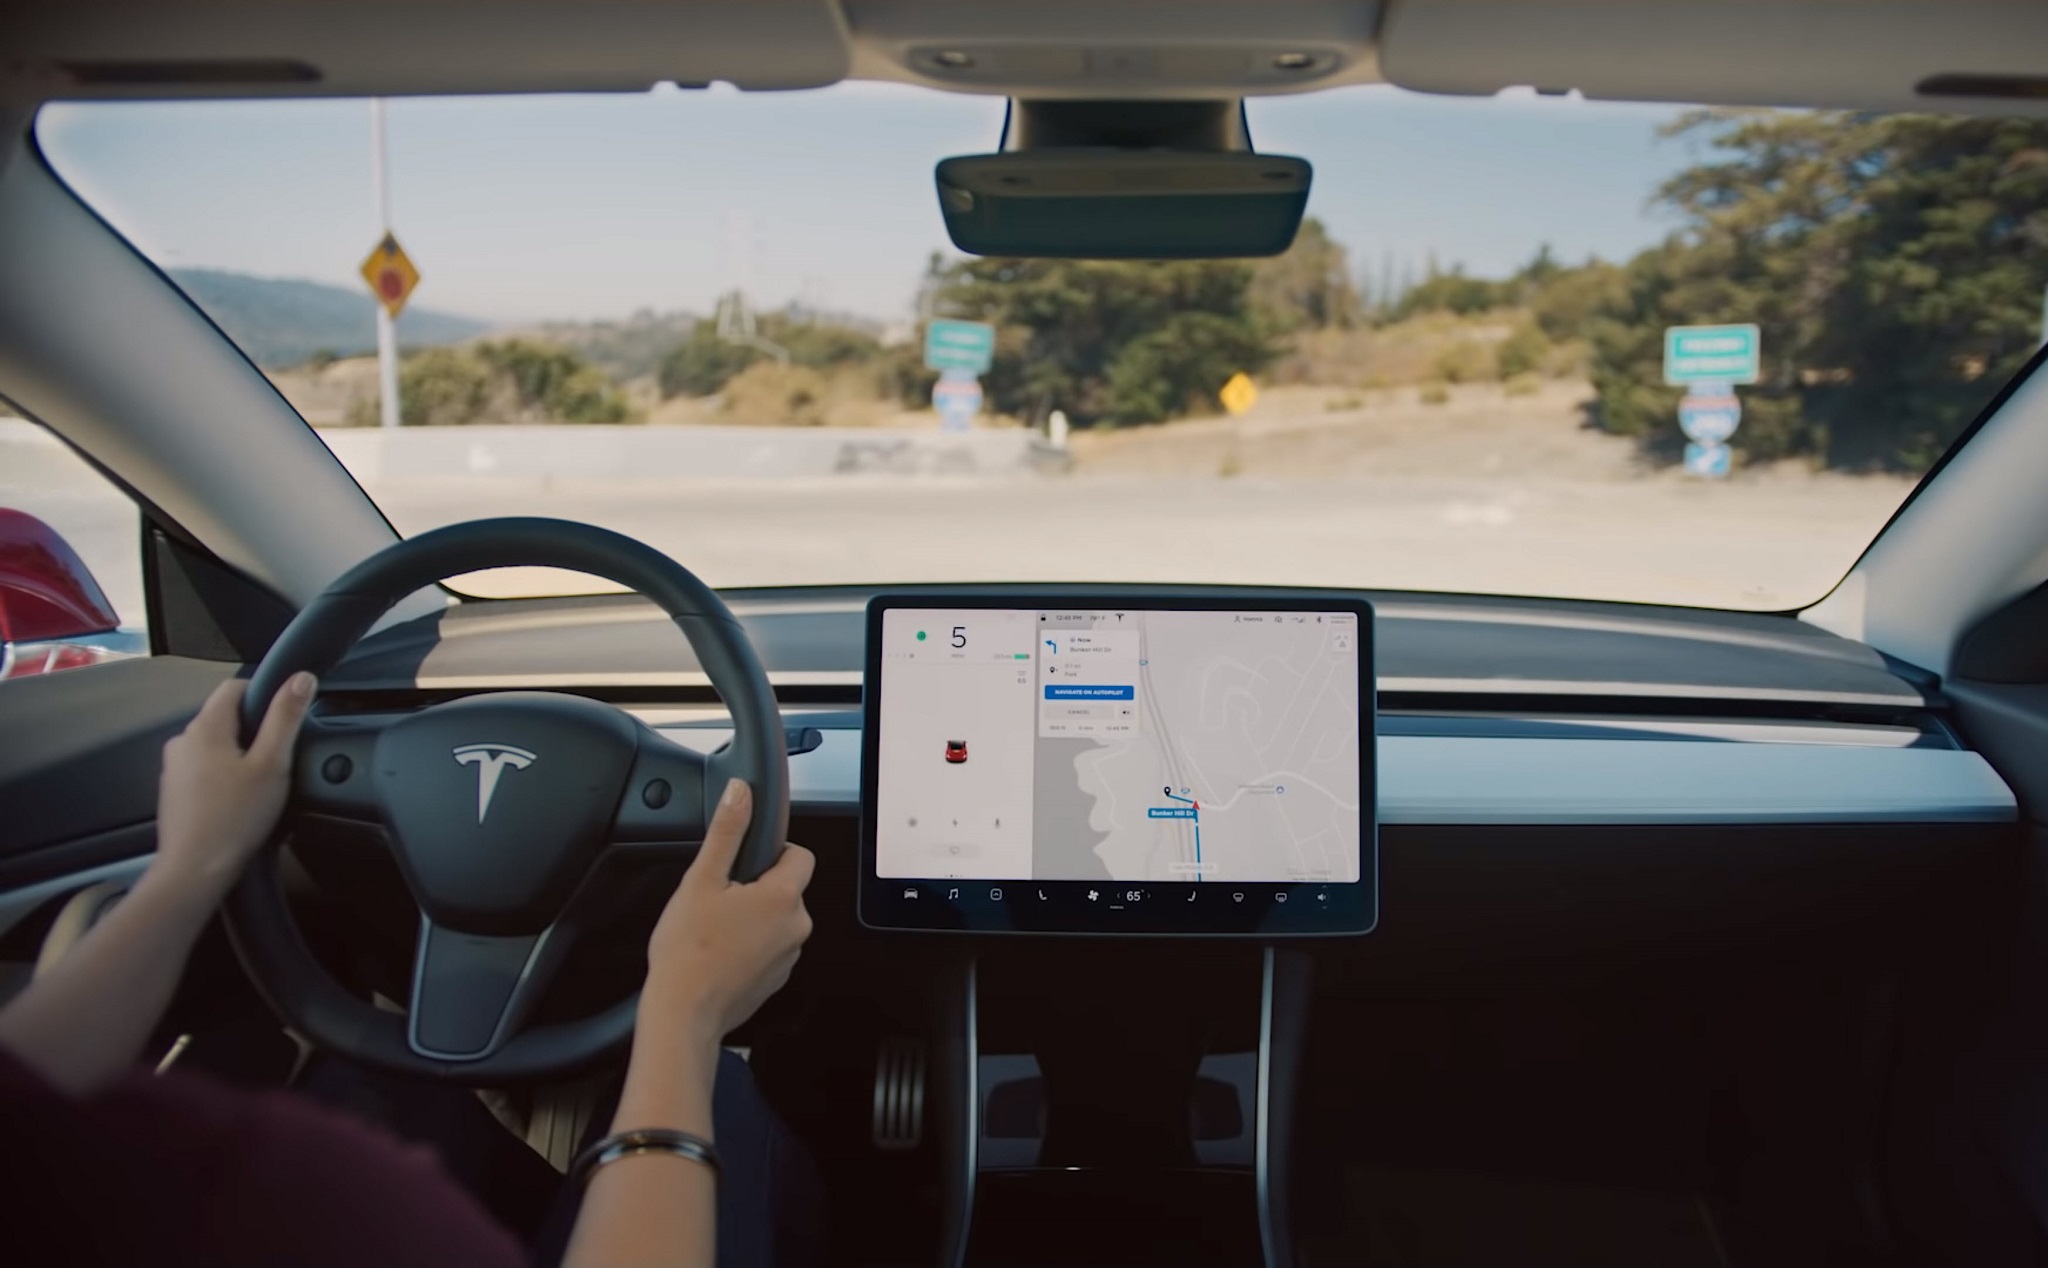 Tesla bổ sung thêm Navigate on Autopilot cho xe điện, tự lái theo bản đồ định vị